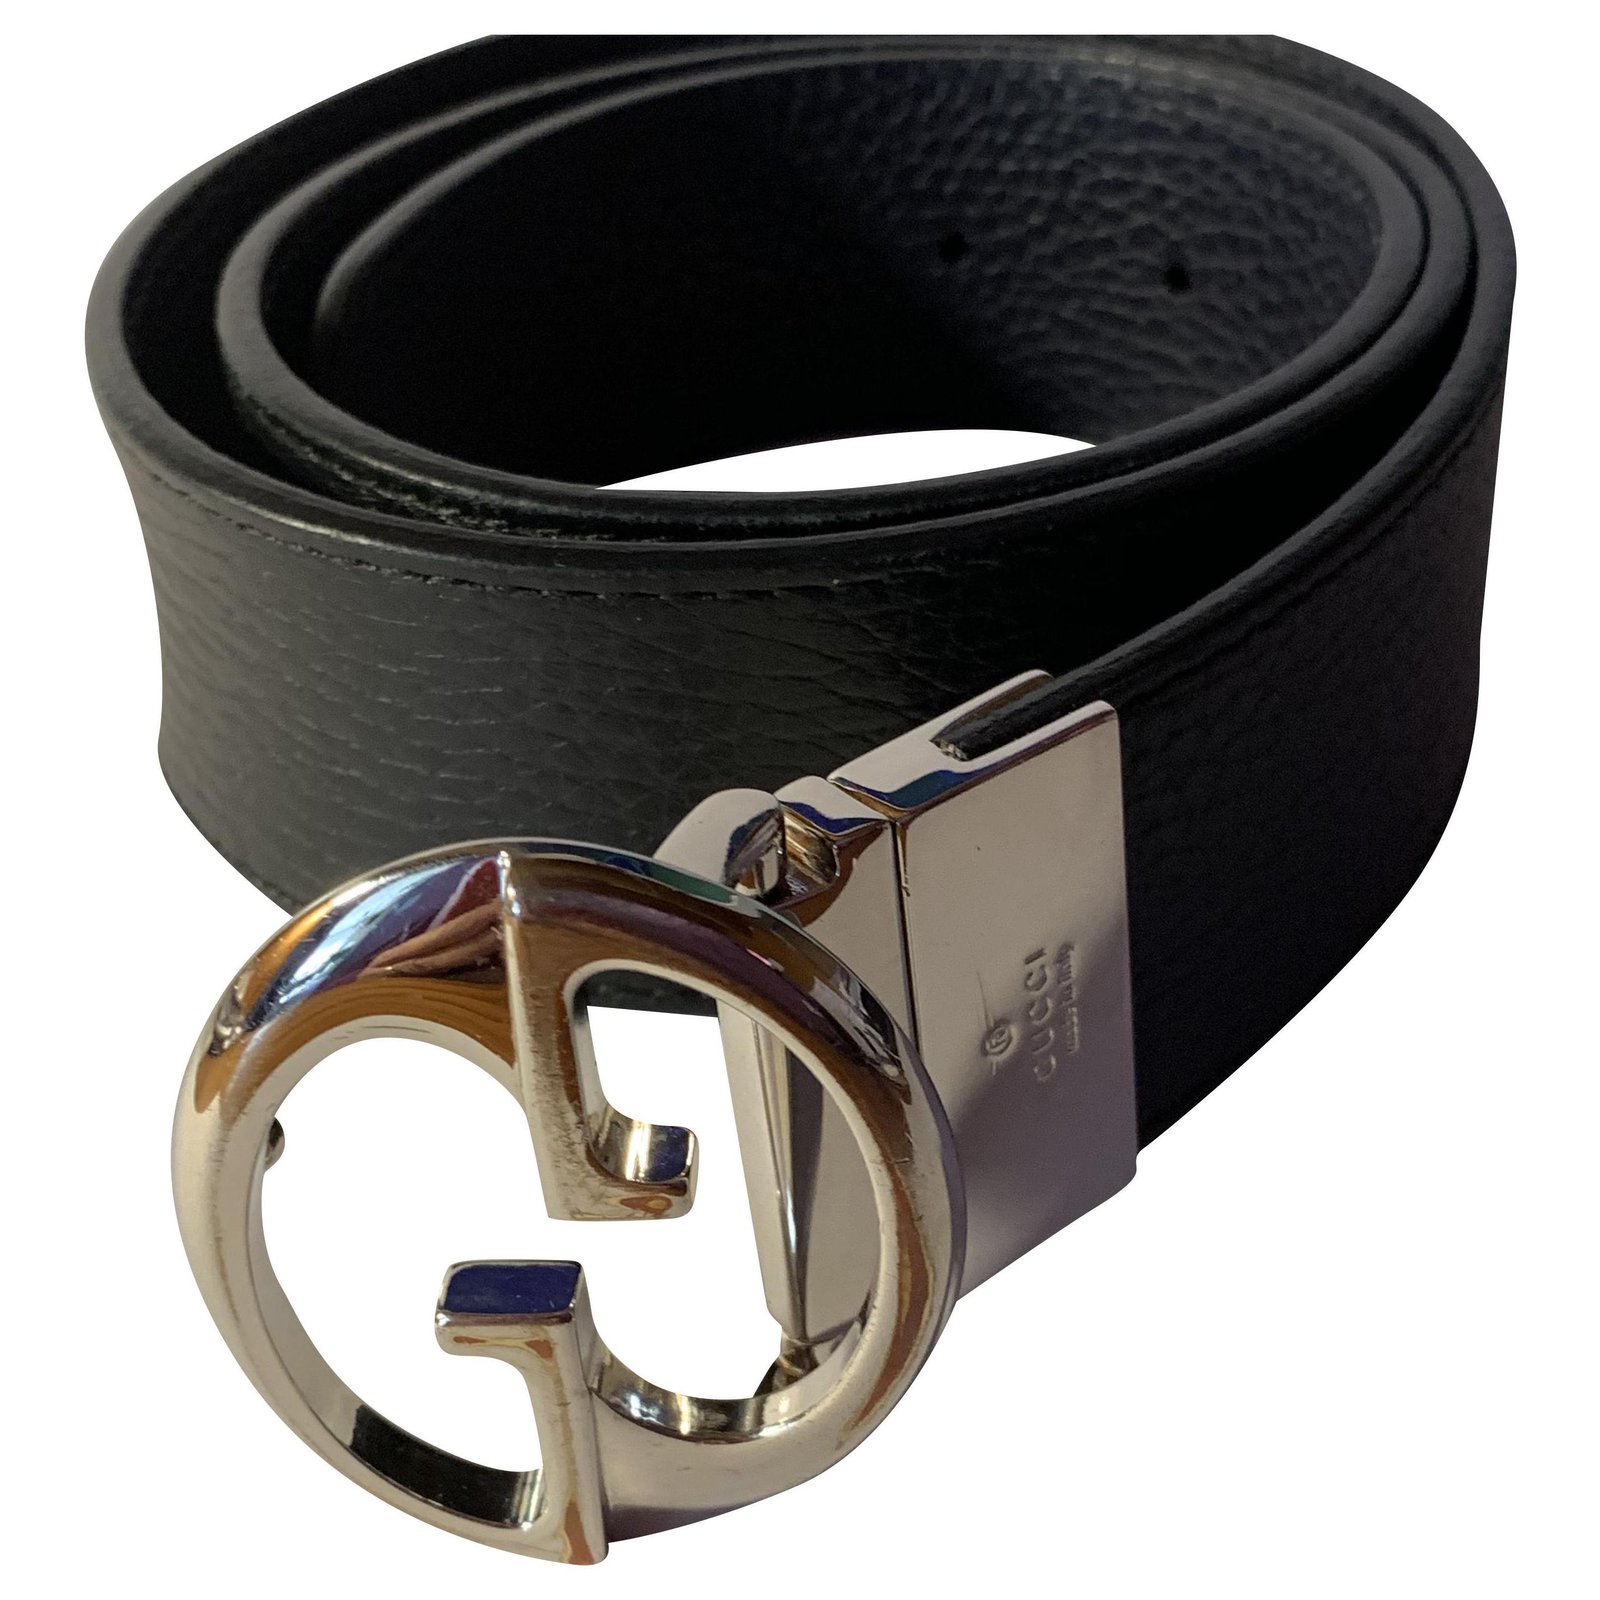 Navy Reversible Gucci Belt 98 cm x 4 cm 